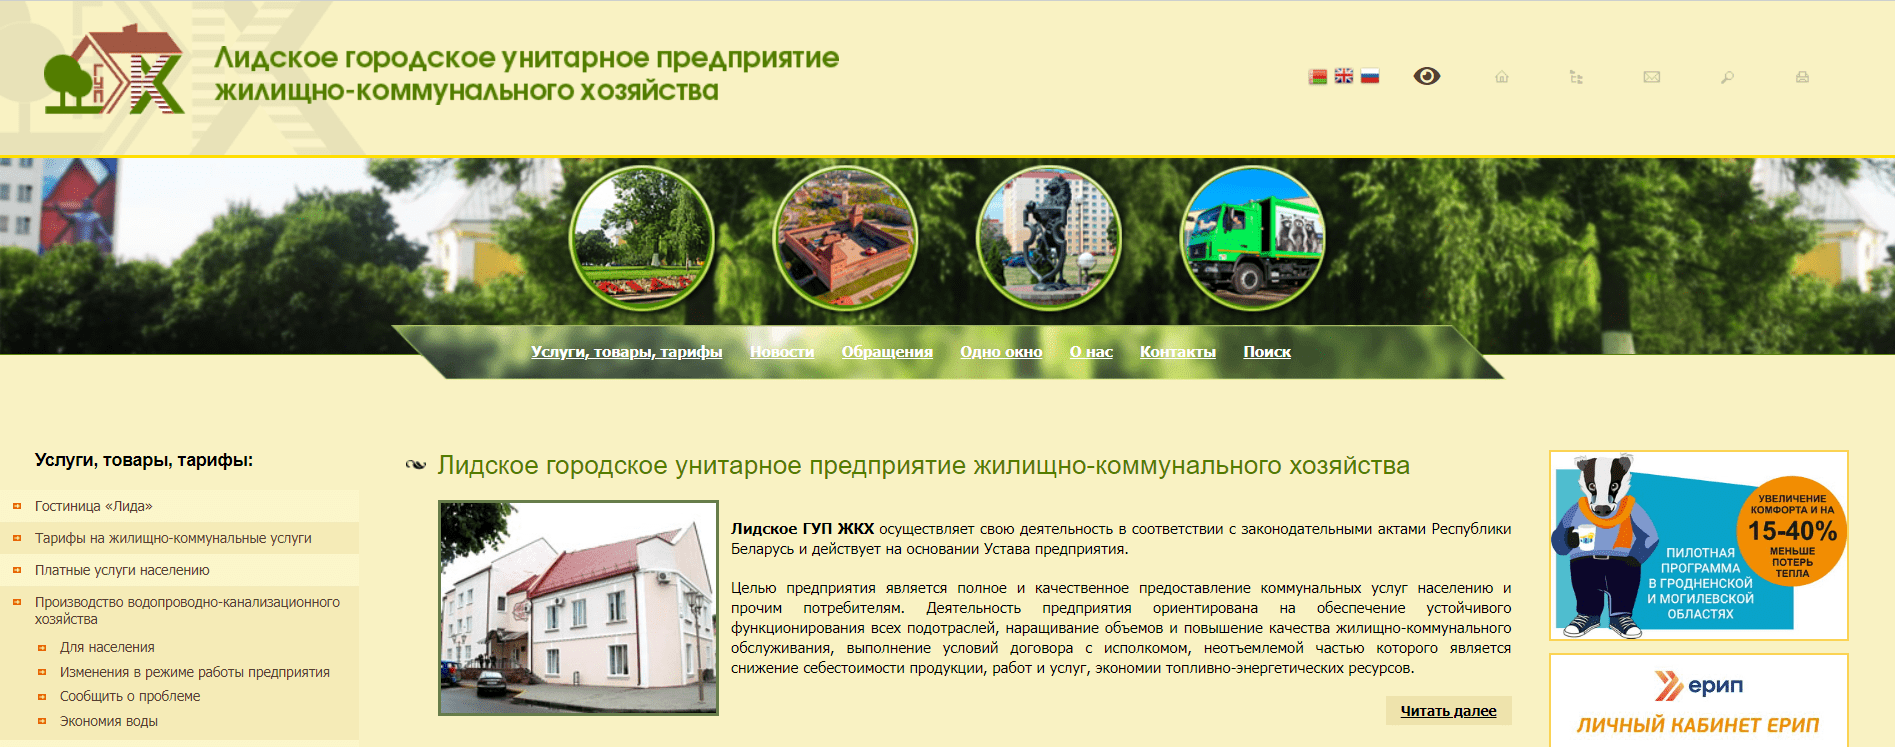 Жилищно-коммунальное хозяйство города Лида (gkh.lida.by) - официальный сайт